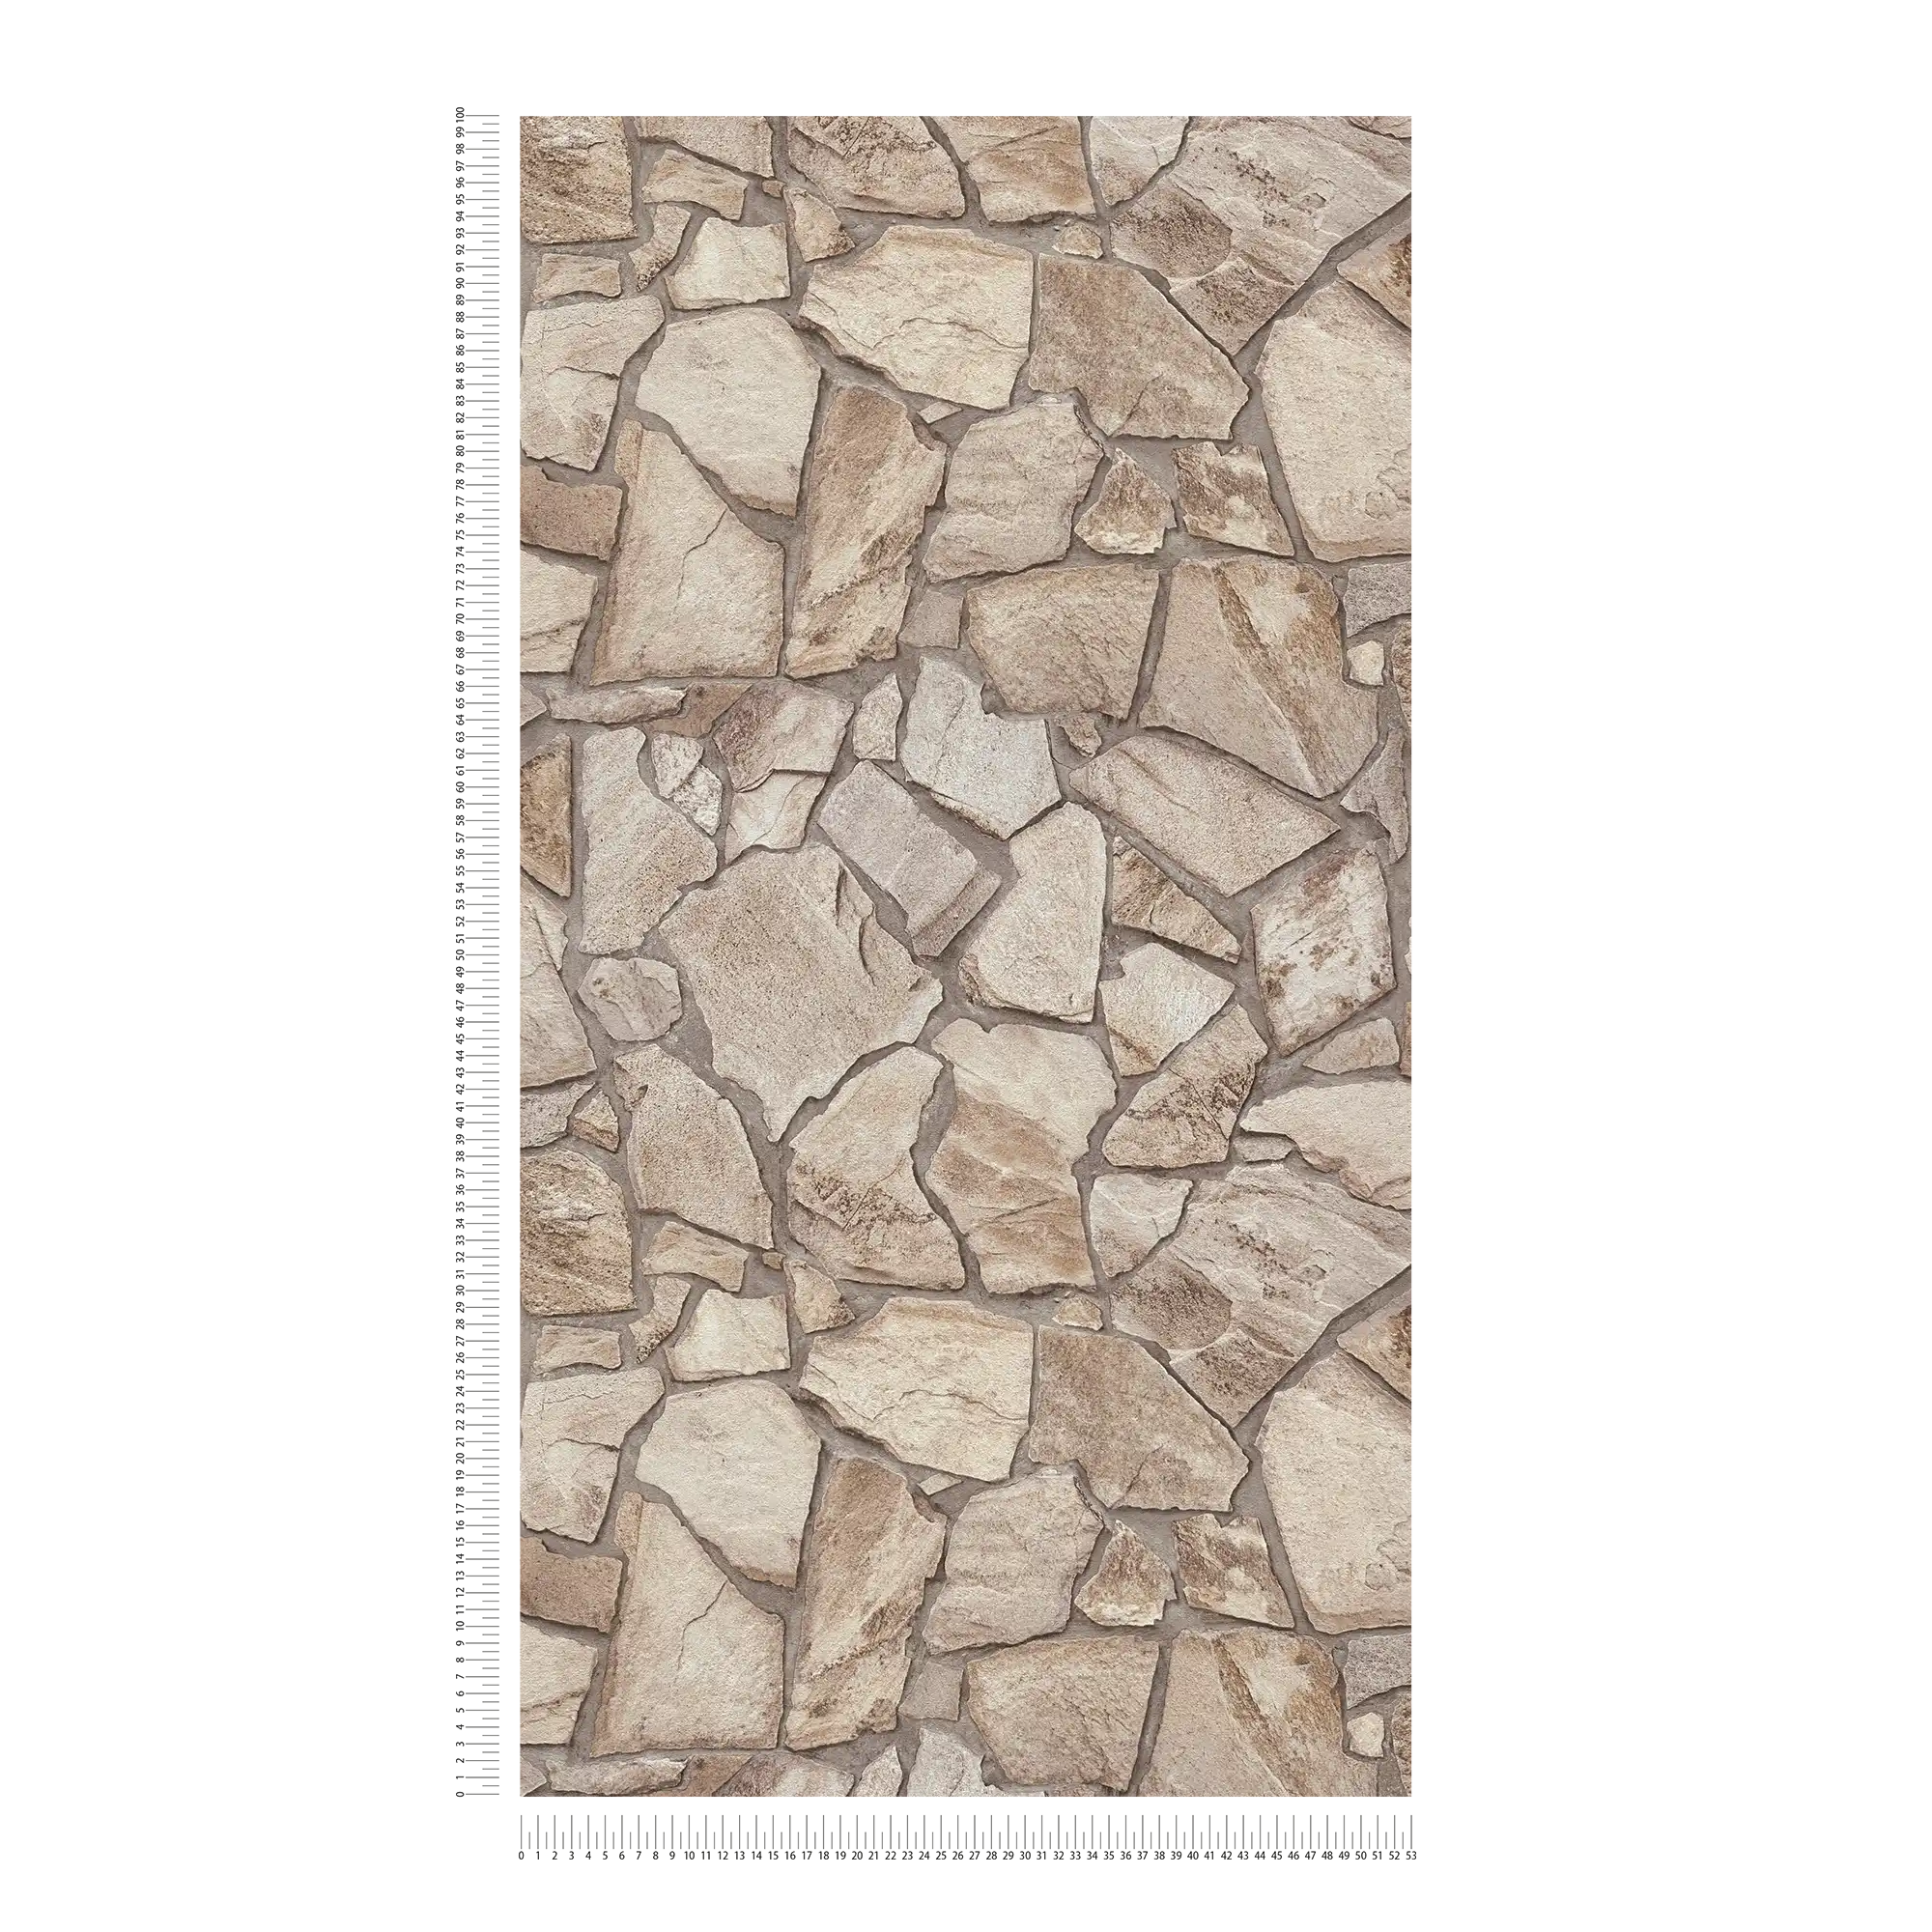             Carta da parati in tessuto non tessuto con parete effetto pietra - marrone, grigio, beige
        